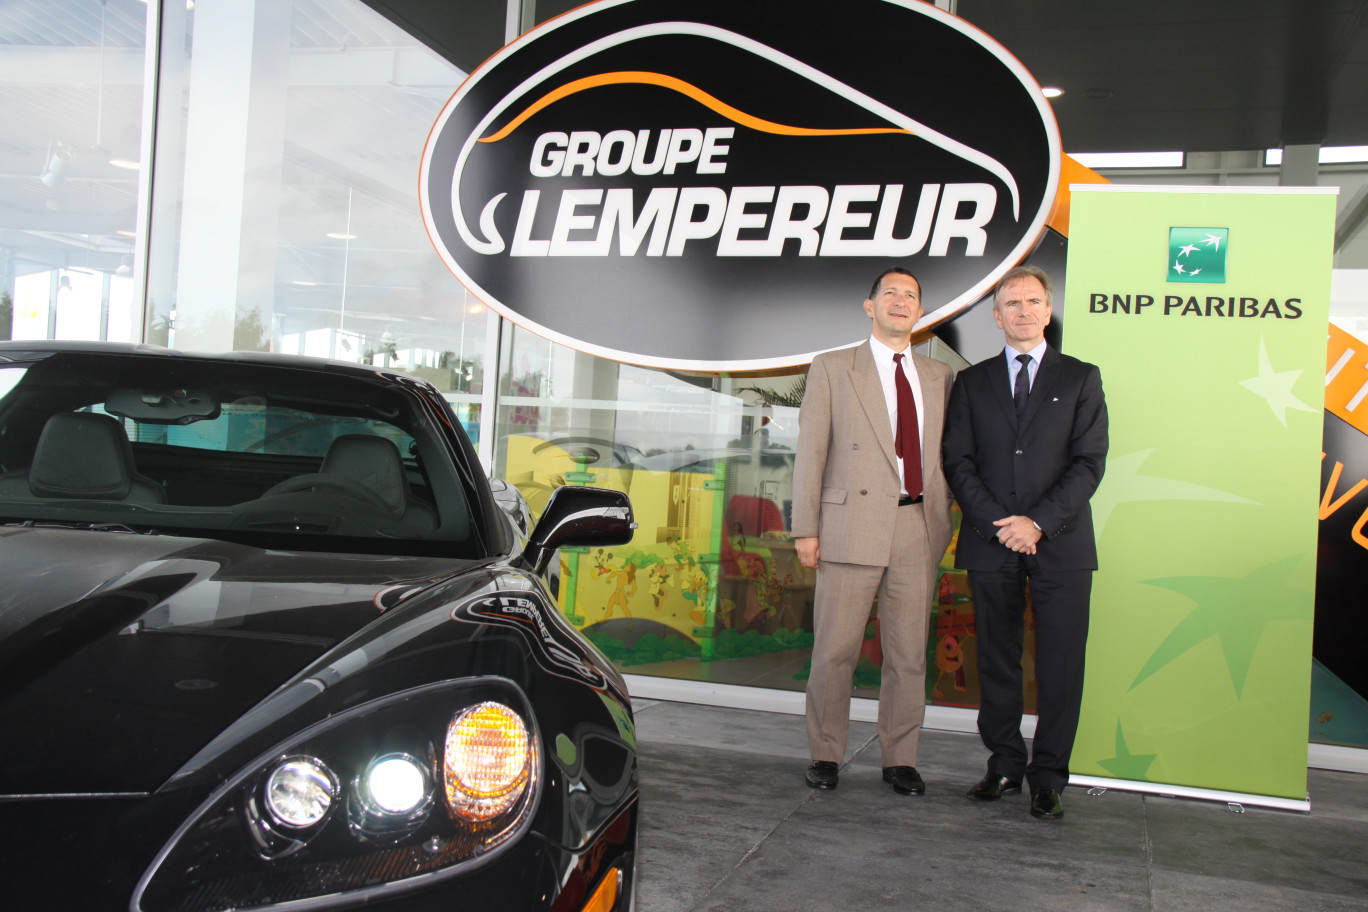 A gauche, Philippe Transon, directeur des agences BNP Paribas Arras-Artois,  en compagnie de Jean-Paul Lempereur, président du groupe éponyme, près de l’entrée du complexe automobile situé dans la nouvelle zone commerciale Boréal de Beaurains. 